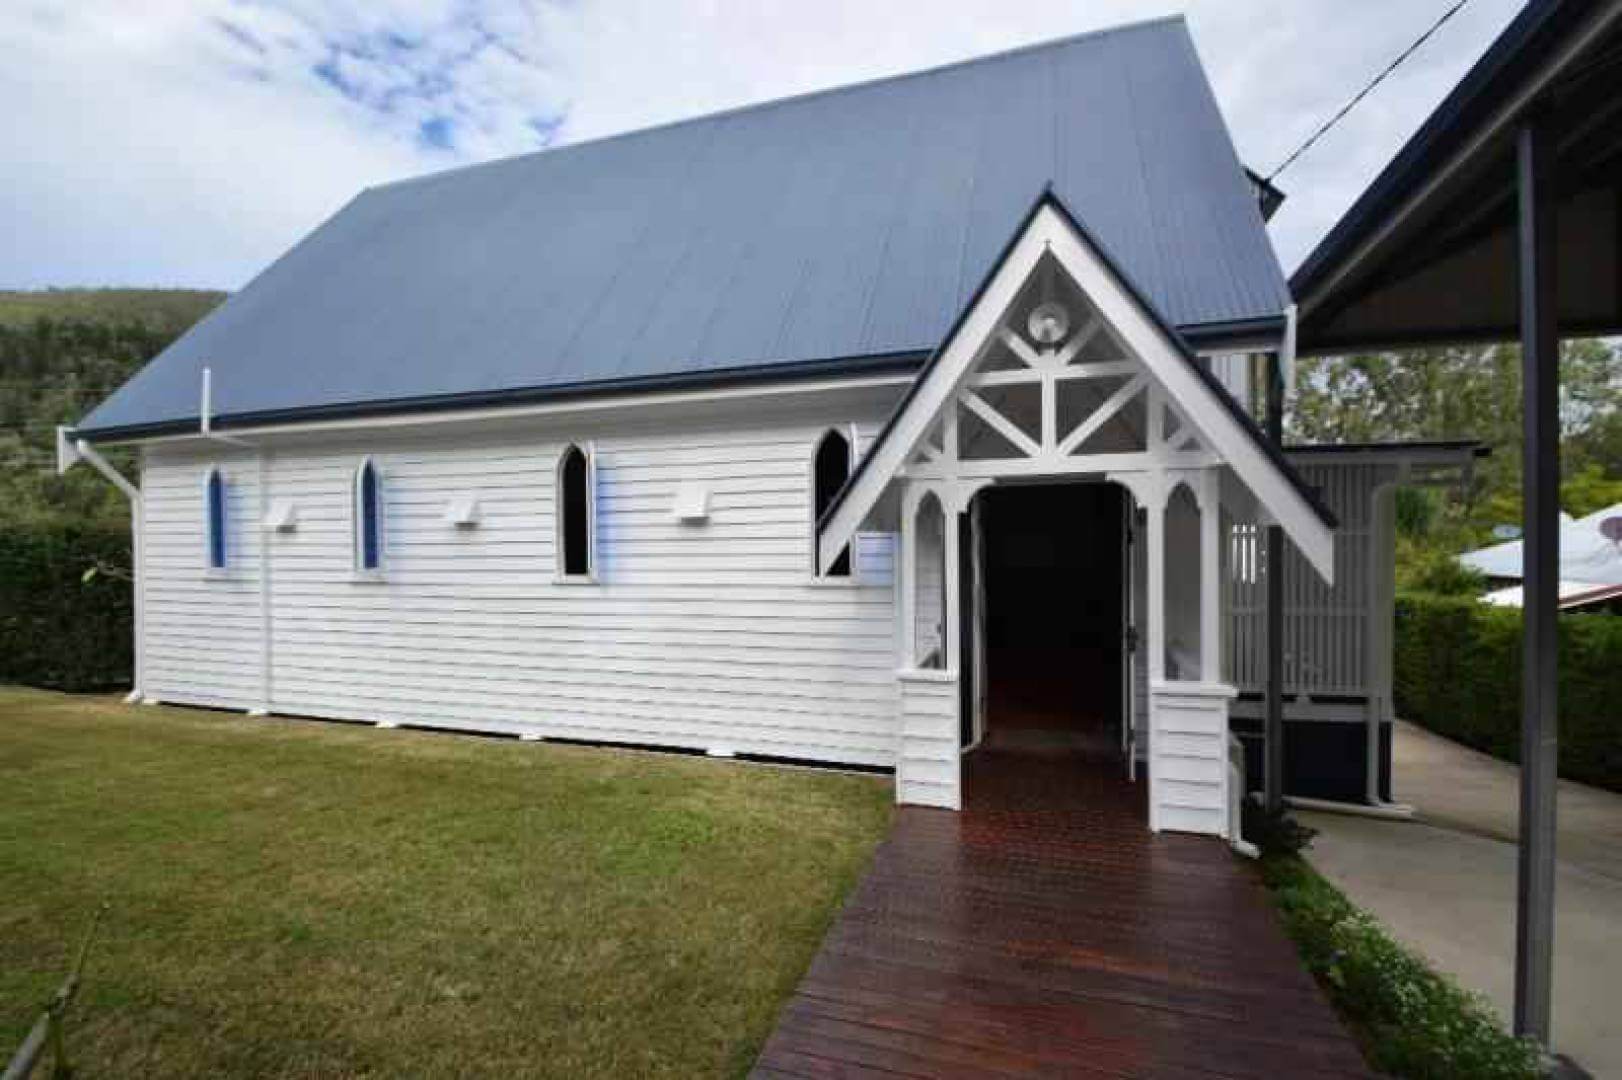 Somerset Dam Anglican Church - Former | Churches Australia